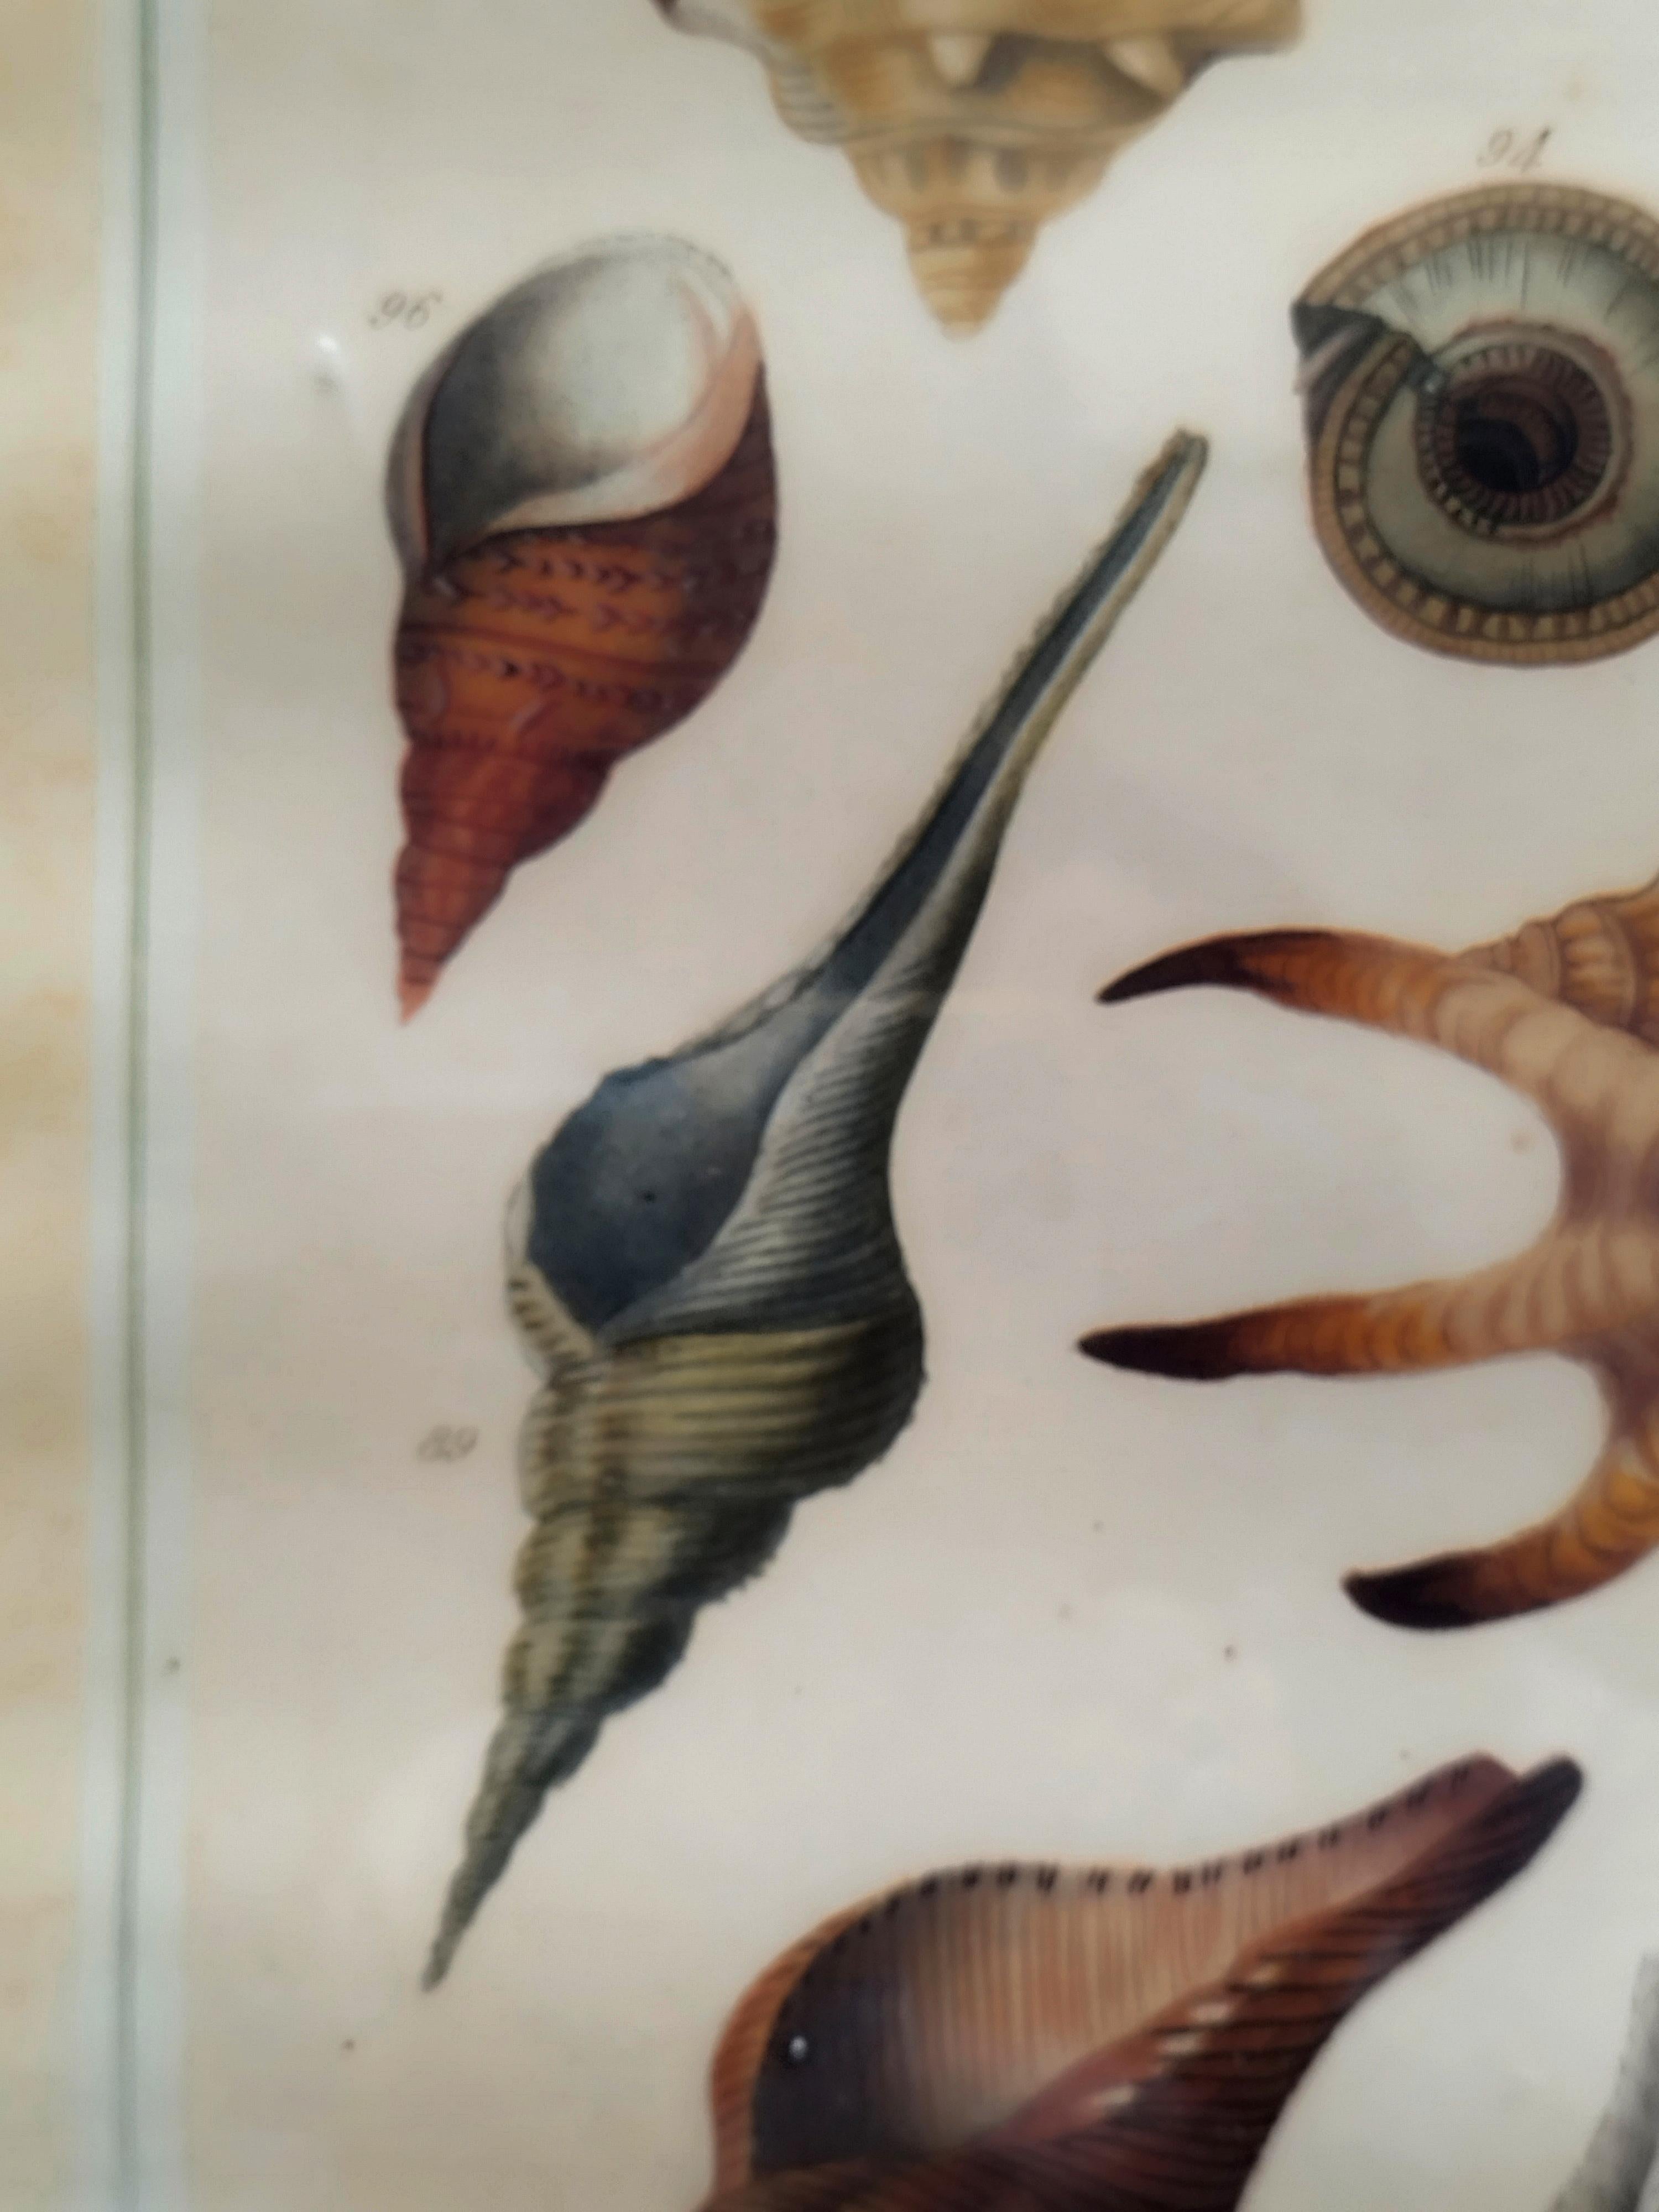 Dekorativer lithografischer Druck von Meereslebewesen Titel 'Univalvi', der Muscheln von 14 Weichtierarten zeigt, Reproduktion eines Muschelstichs von Nicolas Martinet.